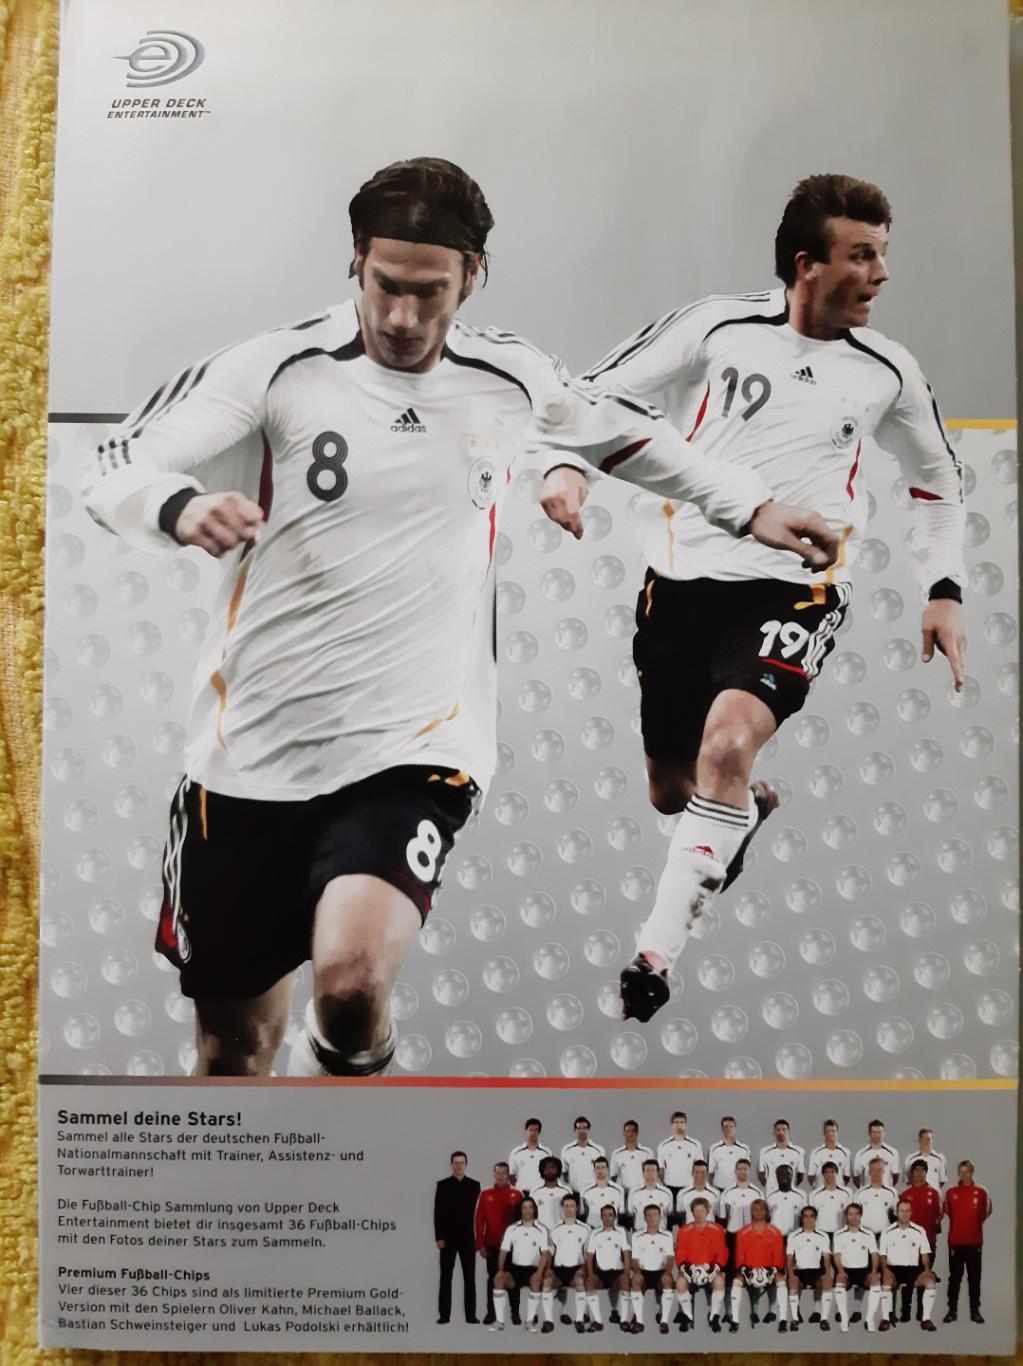 Жетоны с. Германия на ЧМ по футболу 2006 г. 36 шт. 4